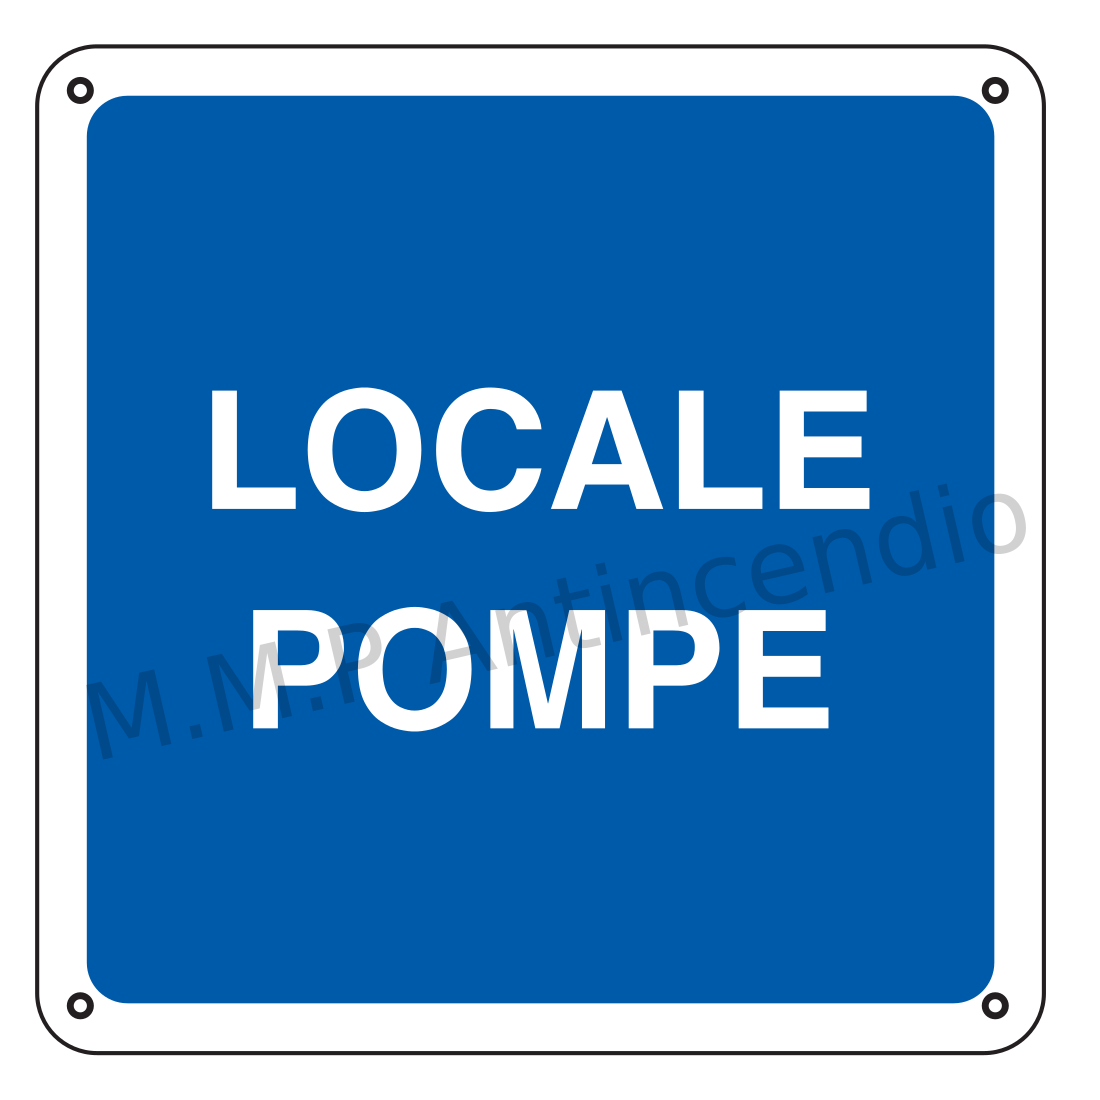 Locale pompe